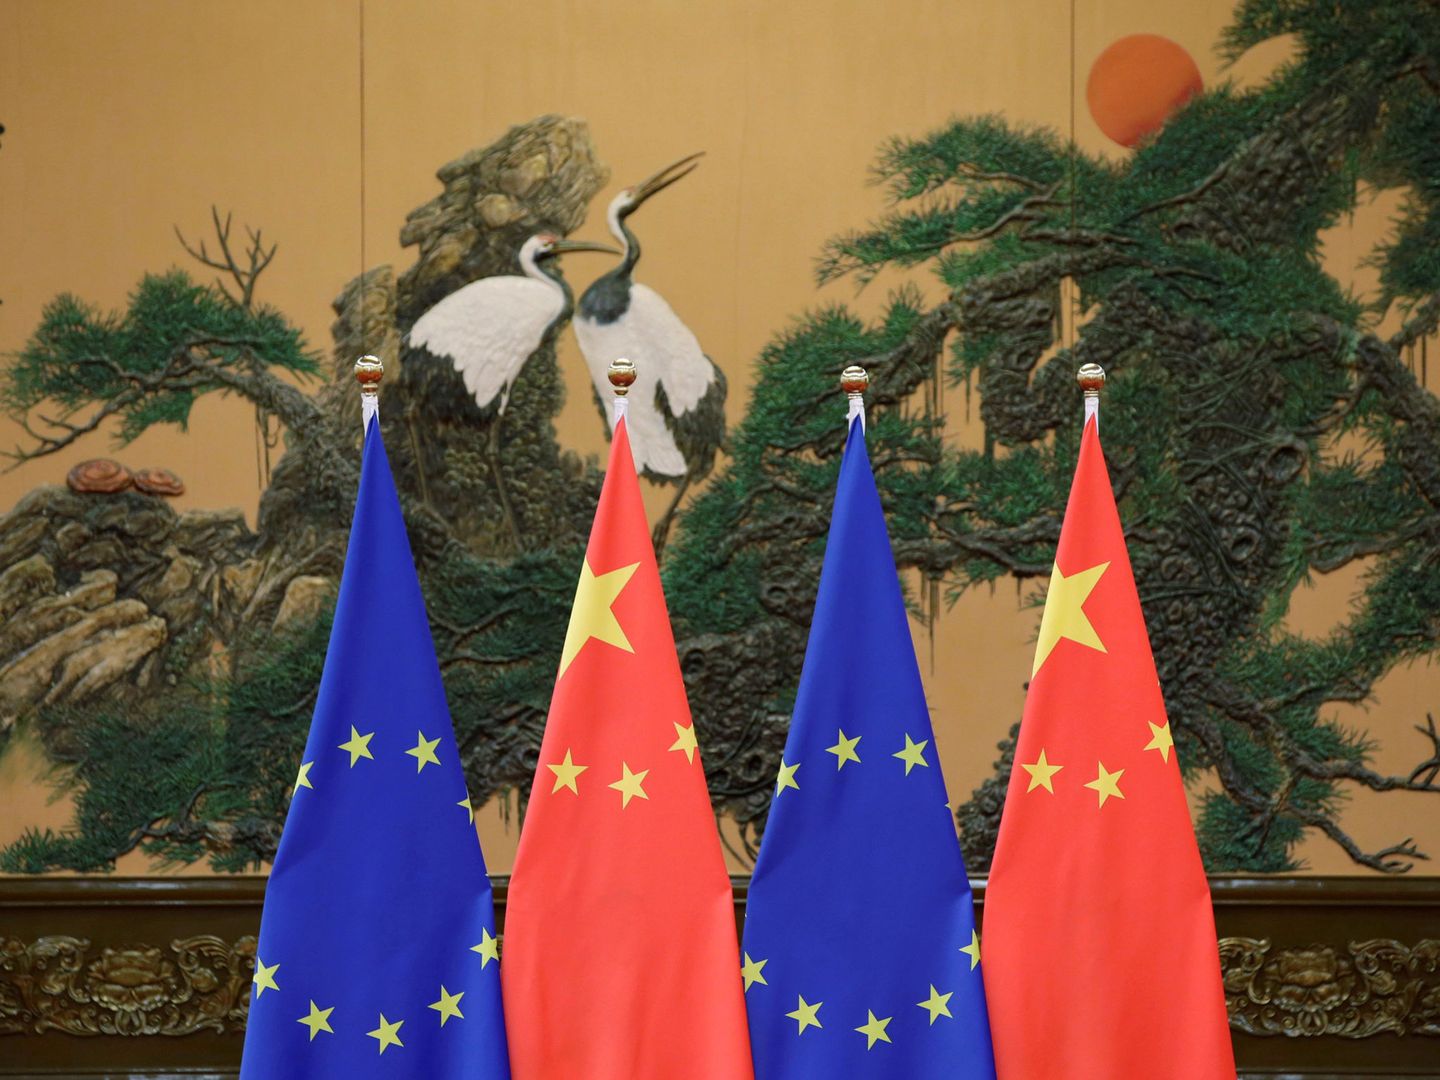 Banderas chinas y europeas durante una reunión en Pekín. (Reuters)